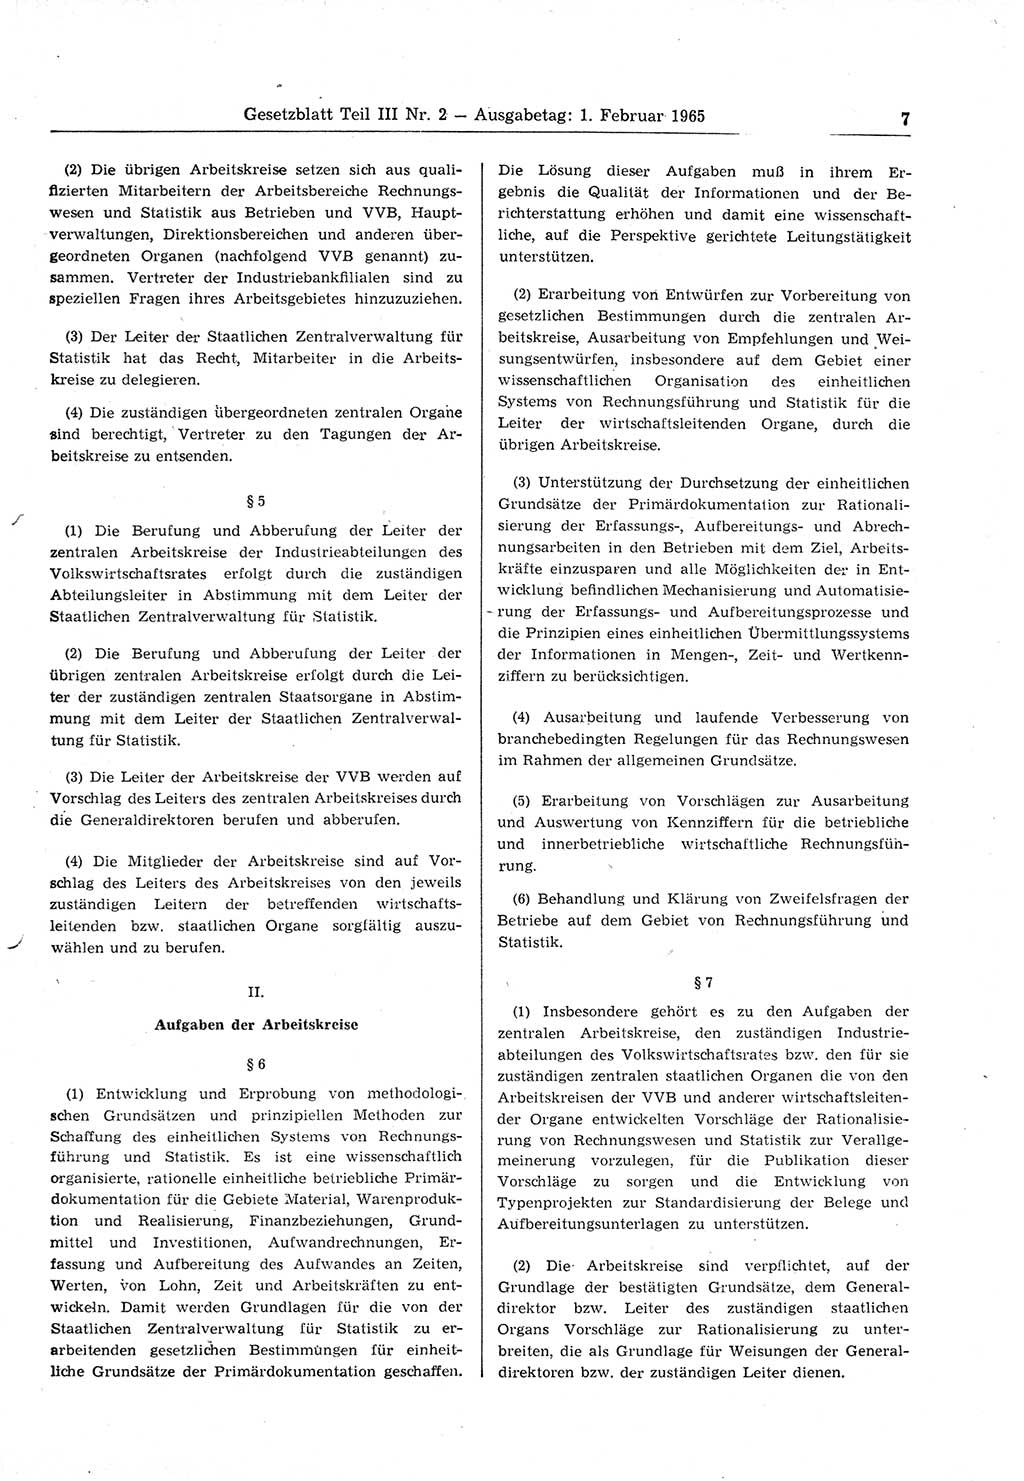 Gesetzblatt (GBl.) der Deutschen Demokratischen Republik (DDR) Teil ⅠⅠⅠ 1965, Seite 7 (GBl. DDR ⅠⅠⅠ 1965, S. 7)